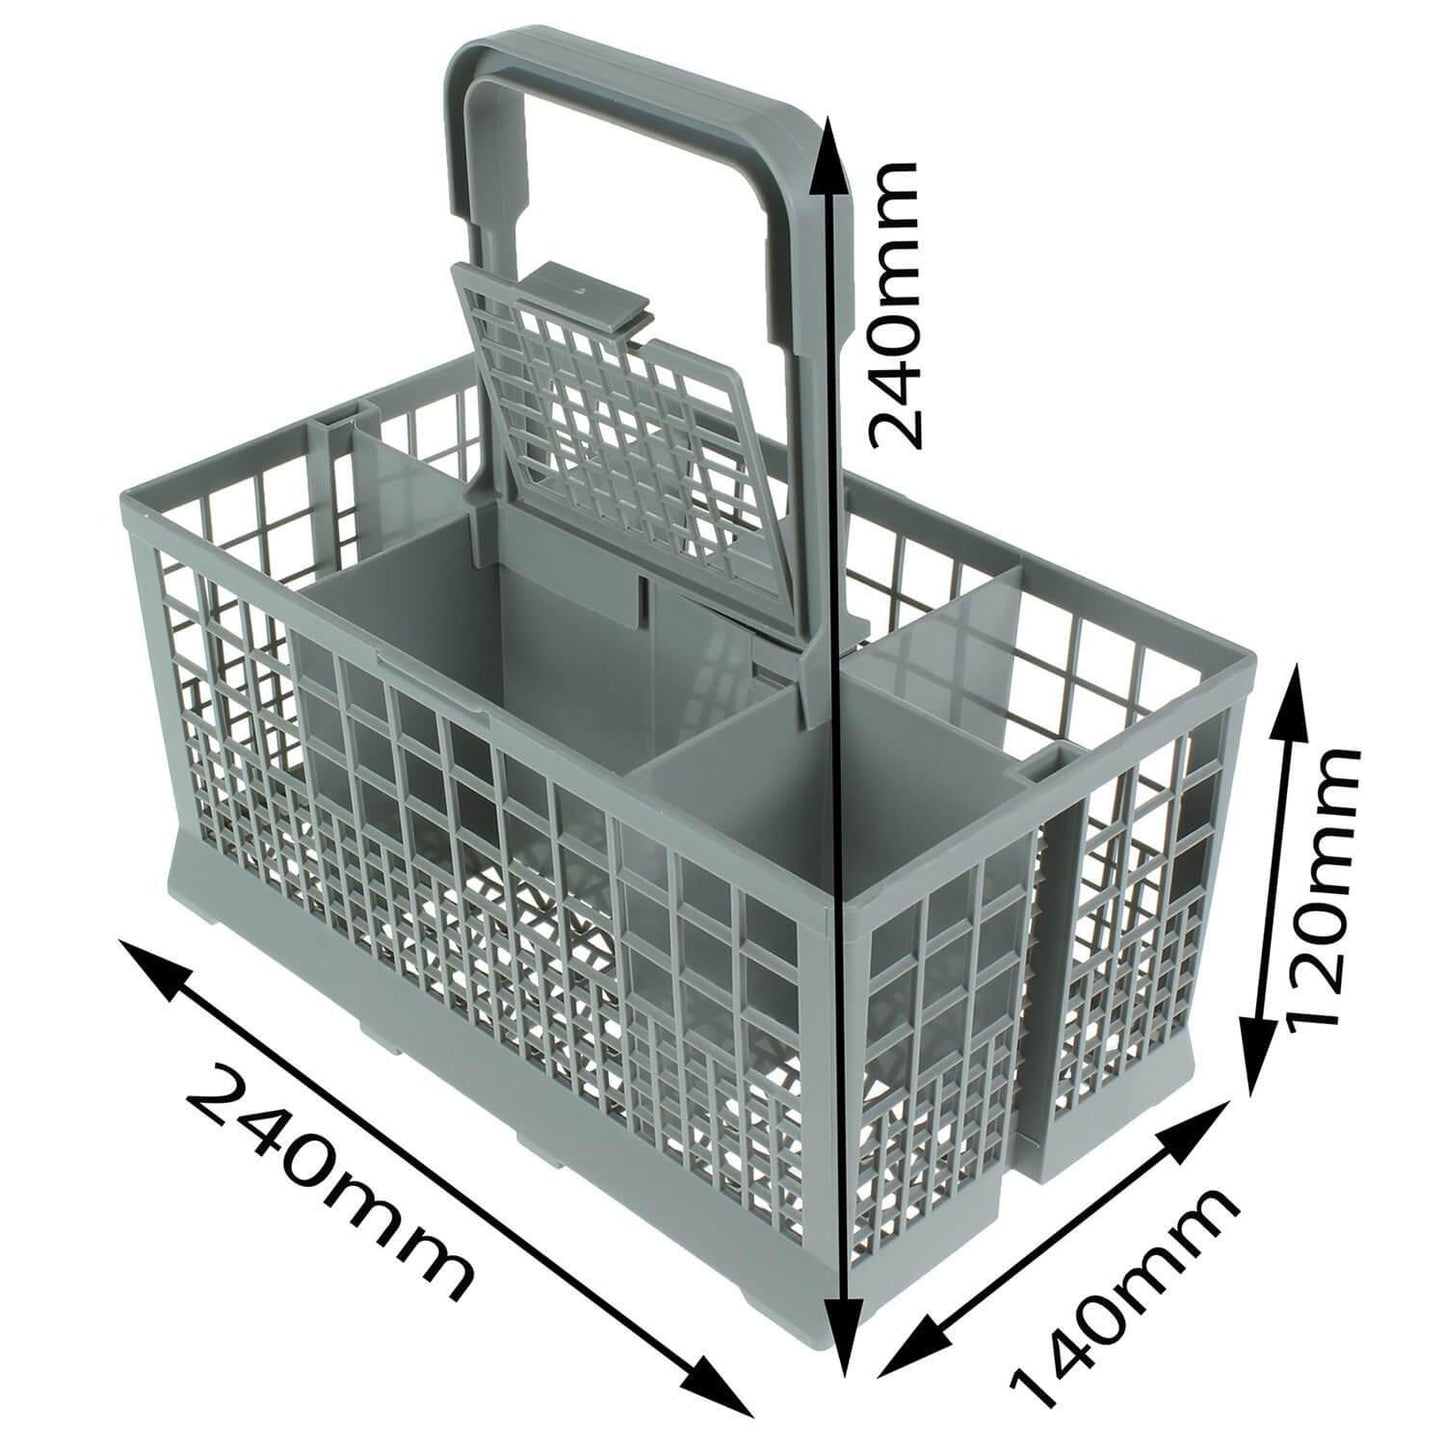 Dishwasher Cutlery Basket Cage For Fisher Paykel DD60SI7 DD60SDFX7 DD60DAW8 Sparesbarn